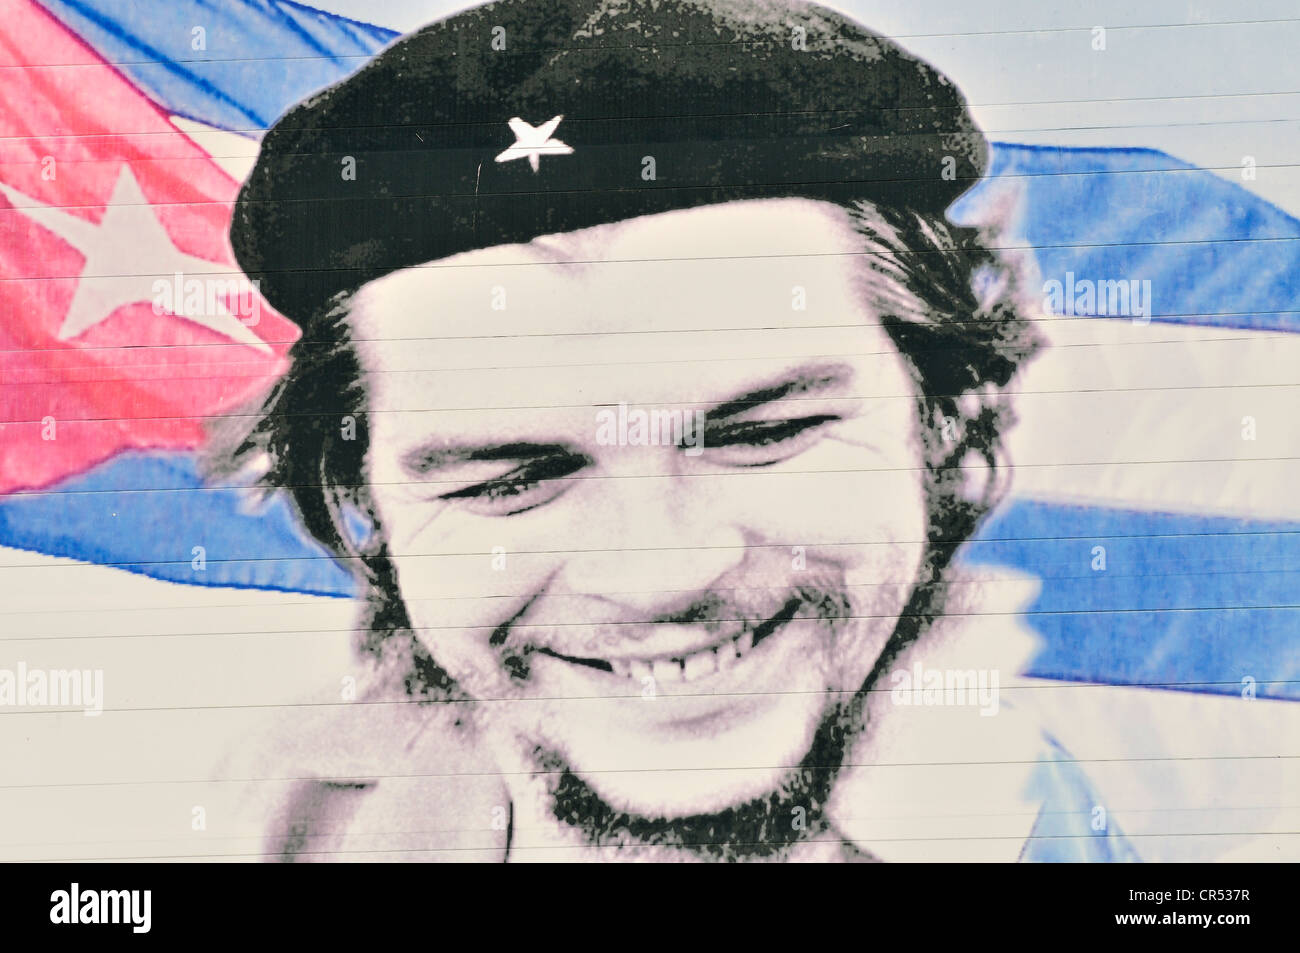 Immagine di Ernesto "Che" Guevara sulla facciata di una casa, di propaganda rivoluzionaria, Camagueey, Cuba, Caraibi Foto Stock